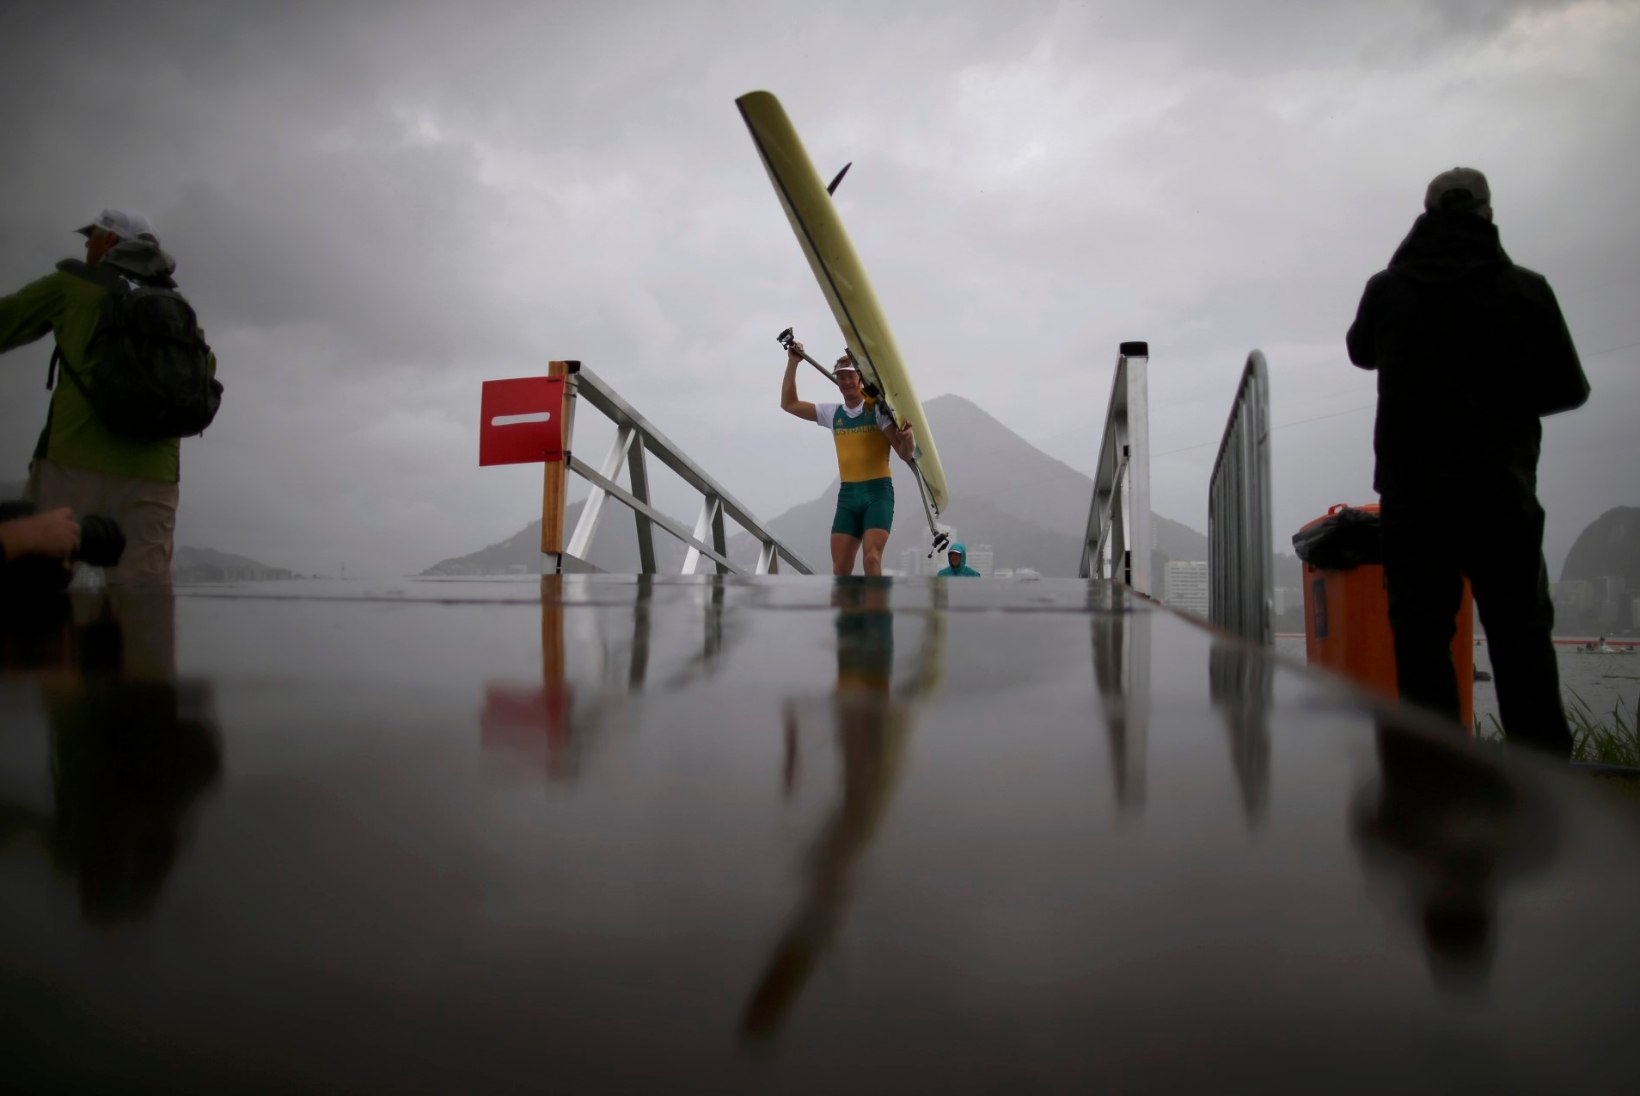 FOTOD | Vaata, milline ilm tõmbas sõudjate tänasele olümpiafinaalile kriipsu peale